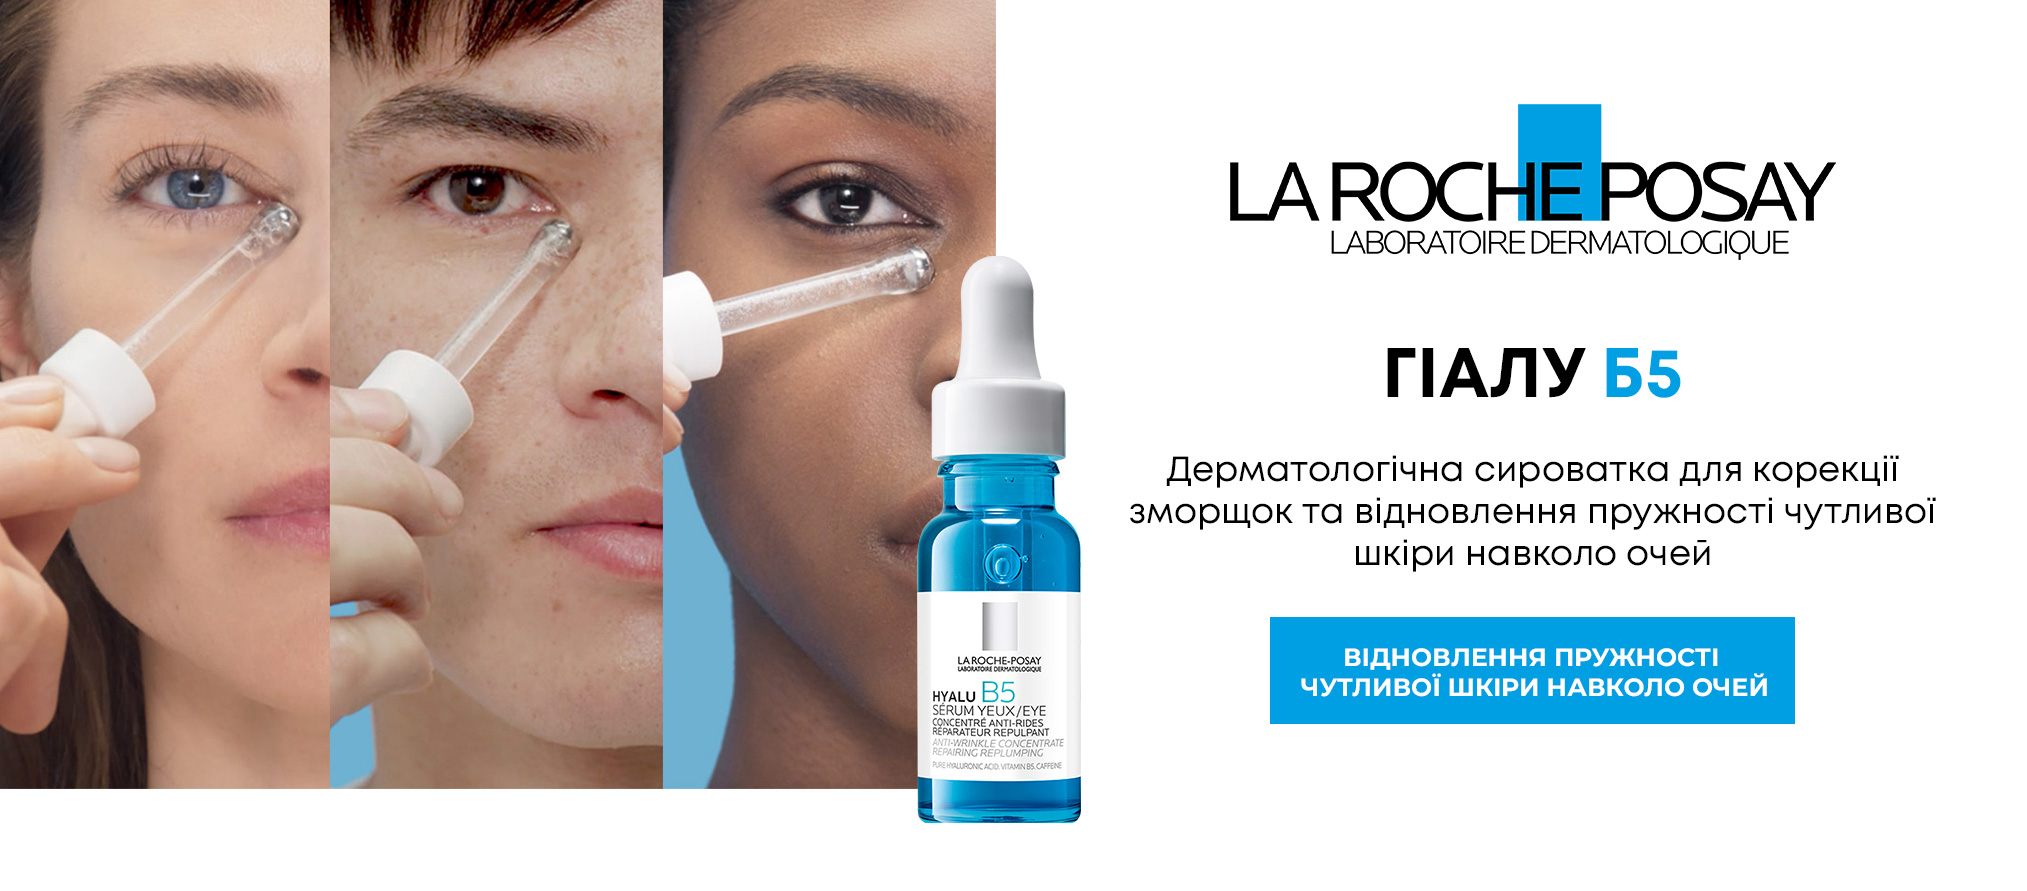 Дерматологічна сироватка для корекції зморщок та відновлення пружності чутливої шкіри навколо очей - La Roche-Posay Hyalu B5 Eye